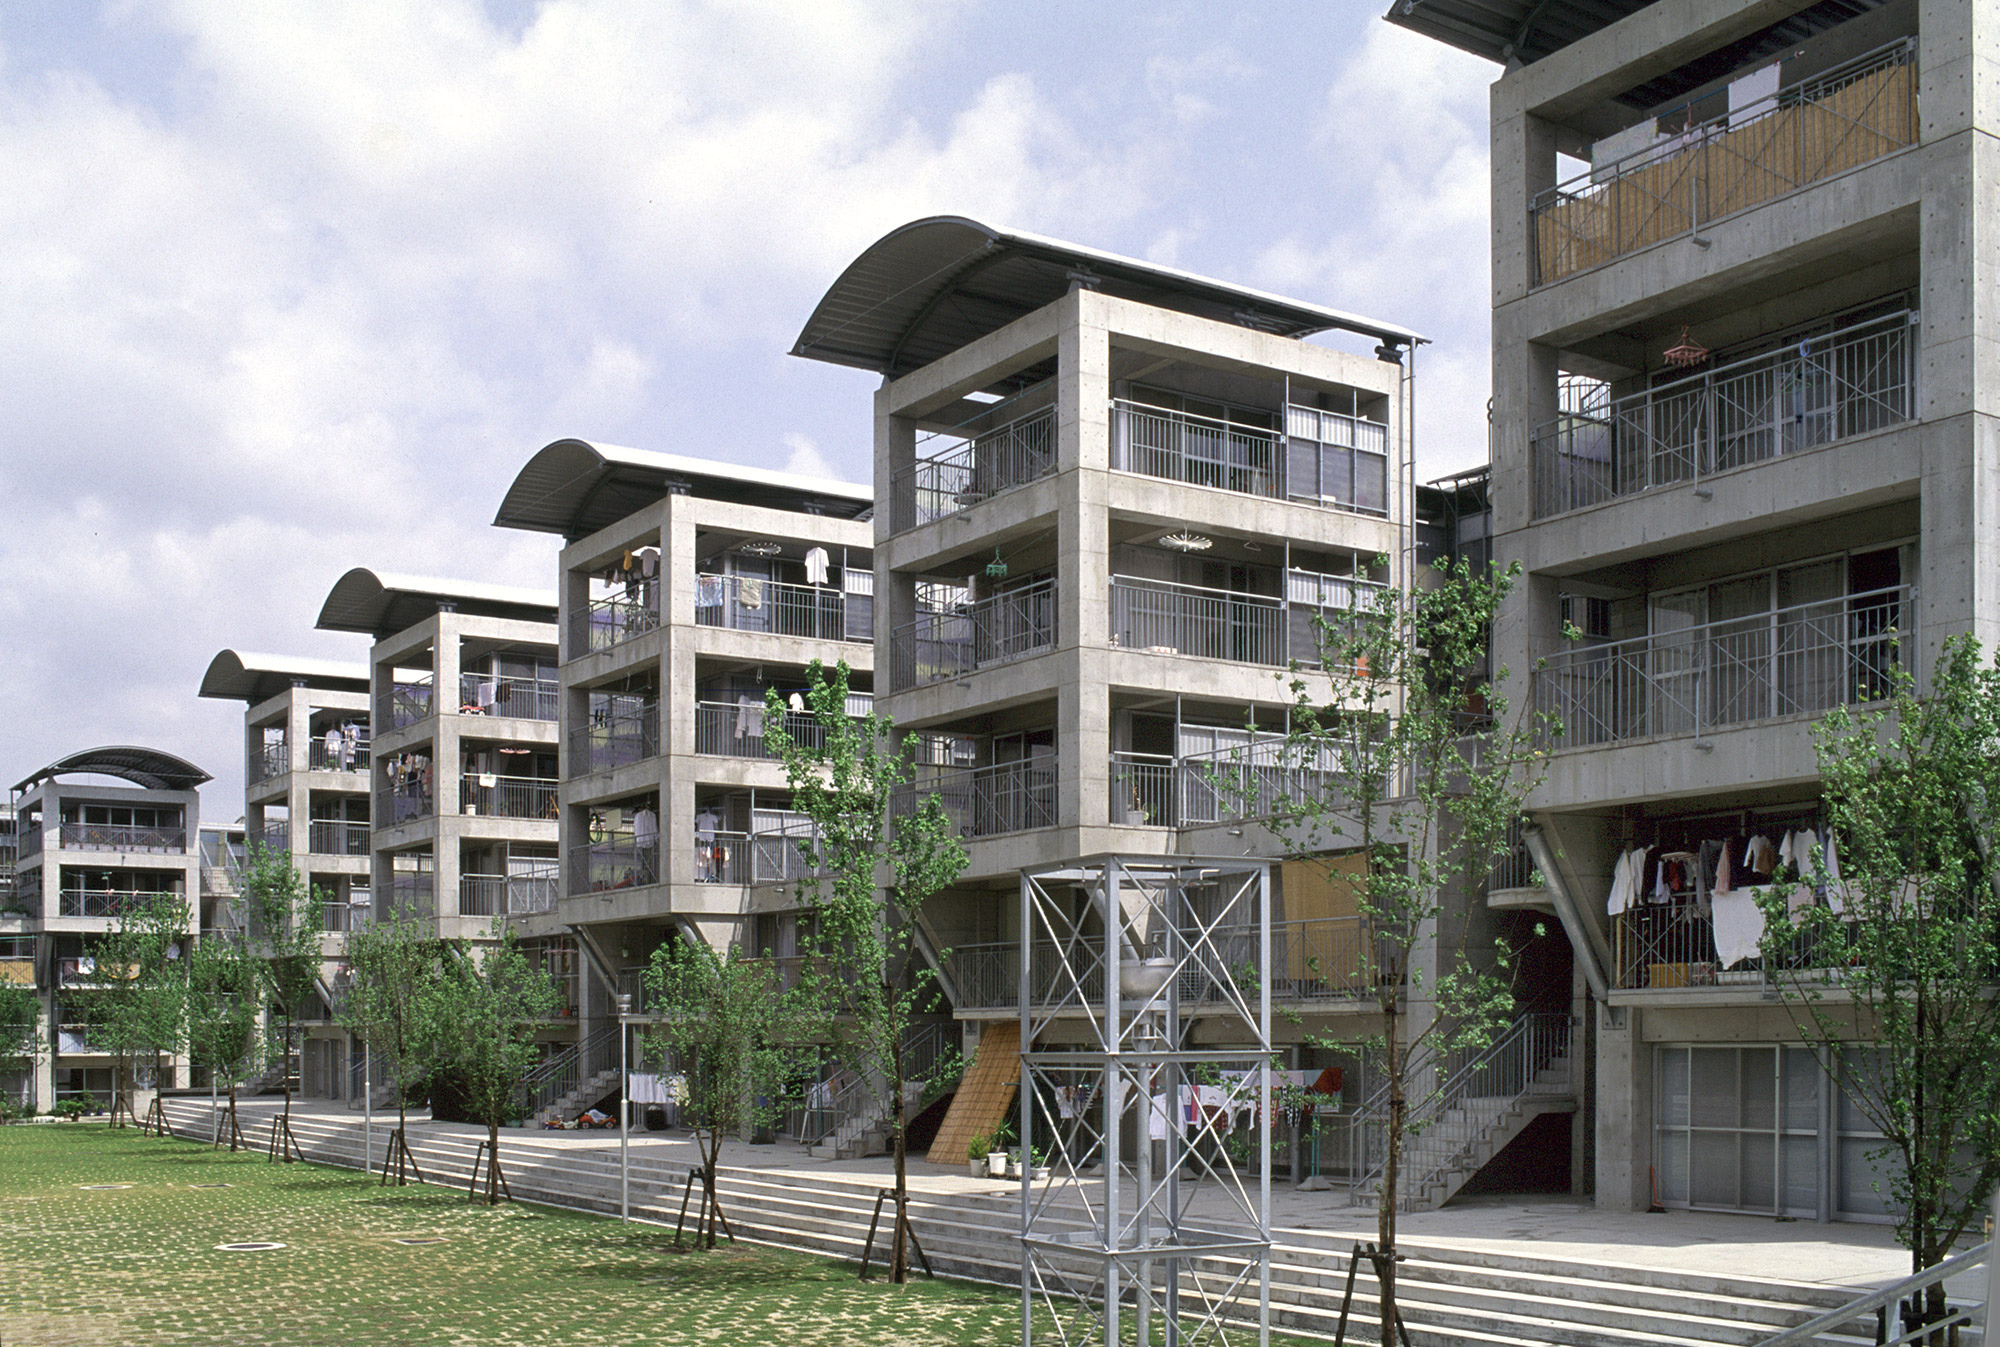 The Hotakubo Housing Complex by Riken Yamamoto